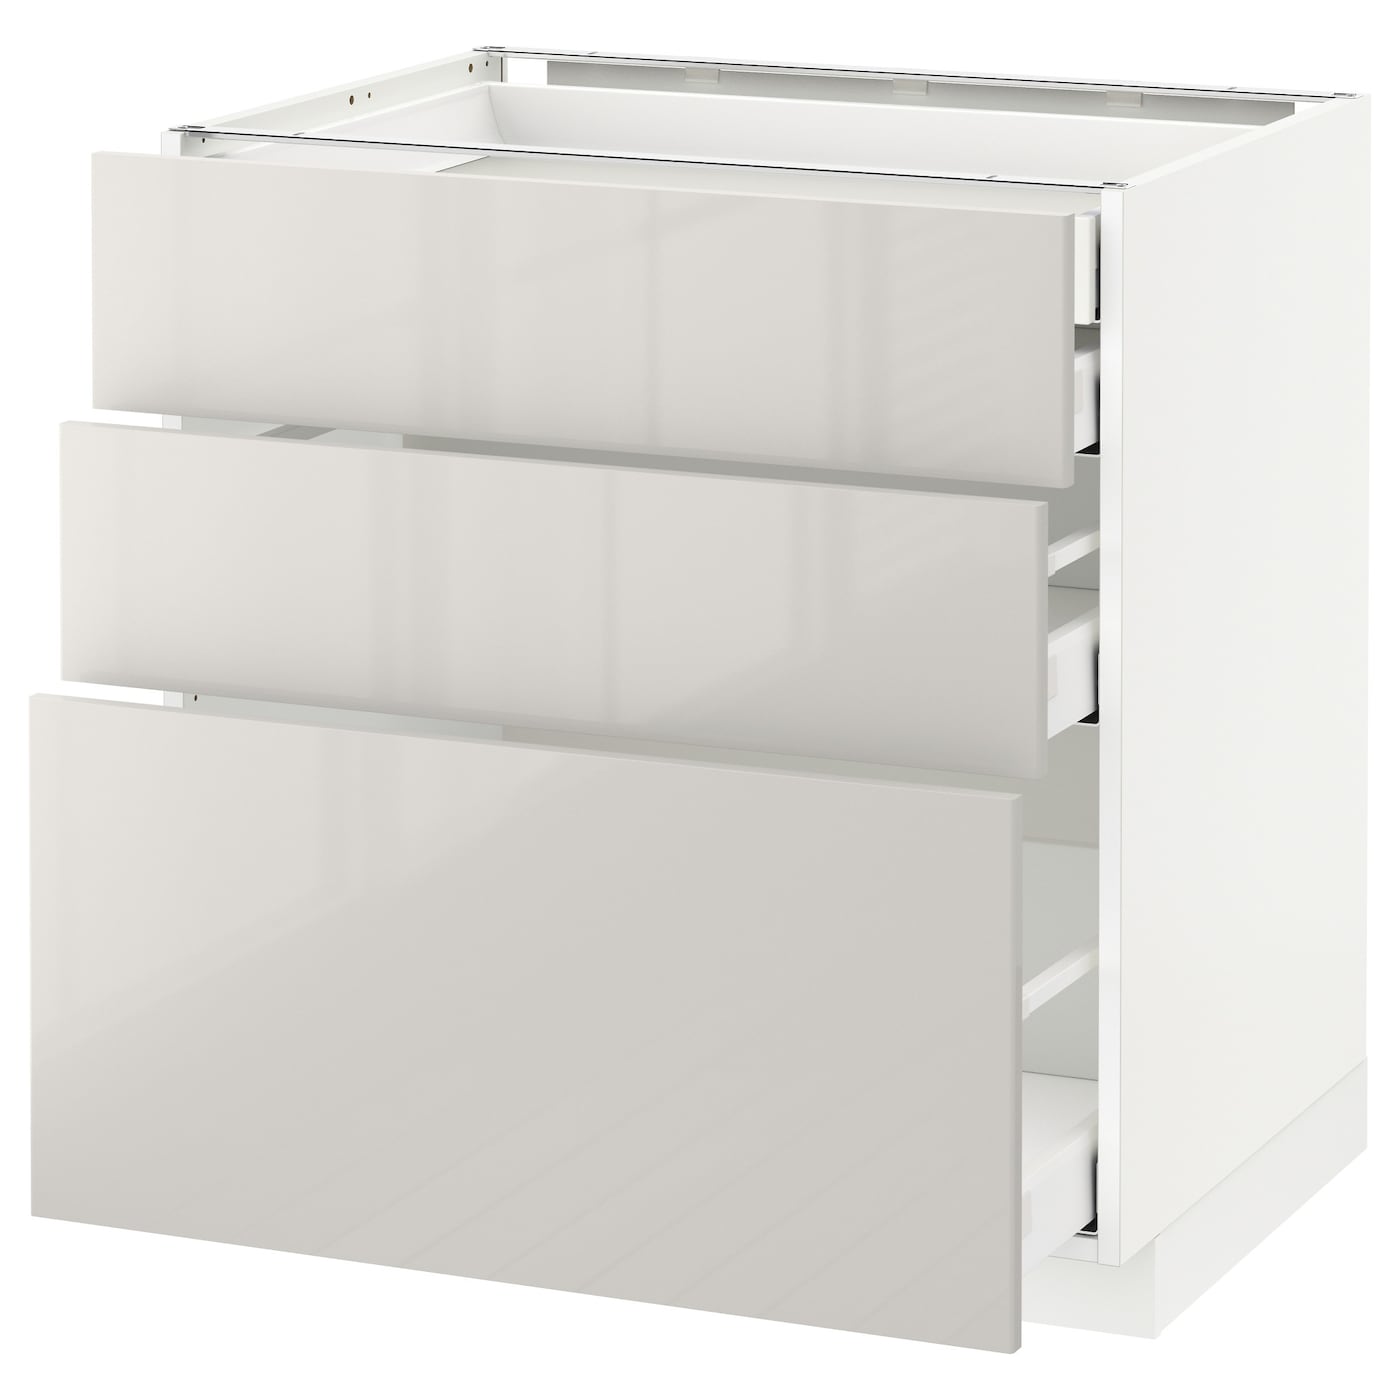 Напольный кухонный шкаф  - IKEA METOD MAXIMERA, 88x62x80см,белый/светло-серый, МЕТОД МАКСИМЕРА ИКЕА